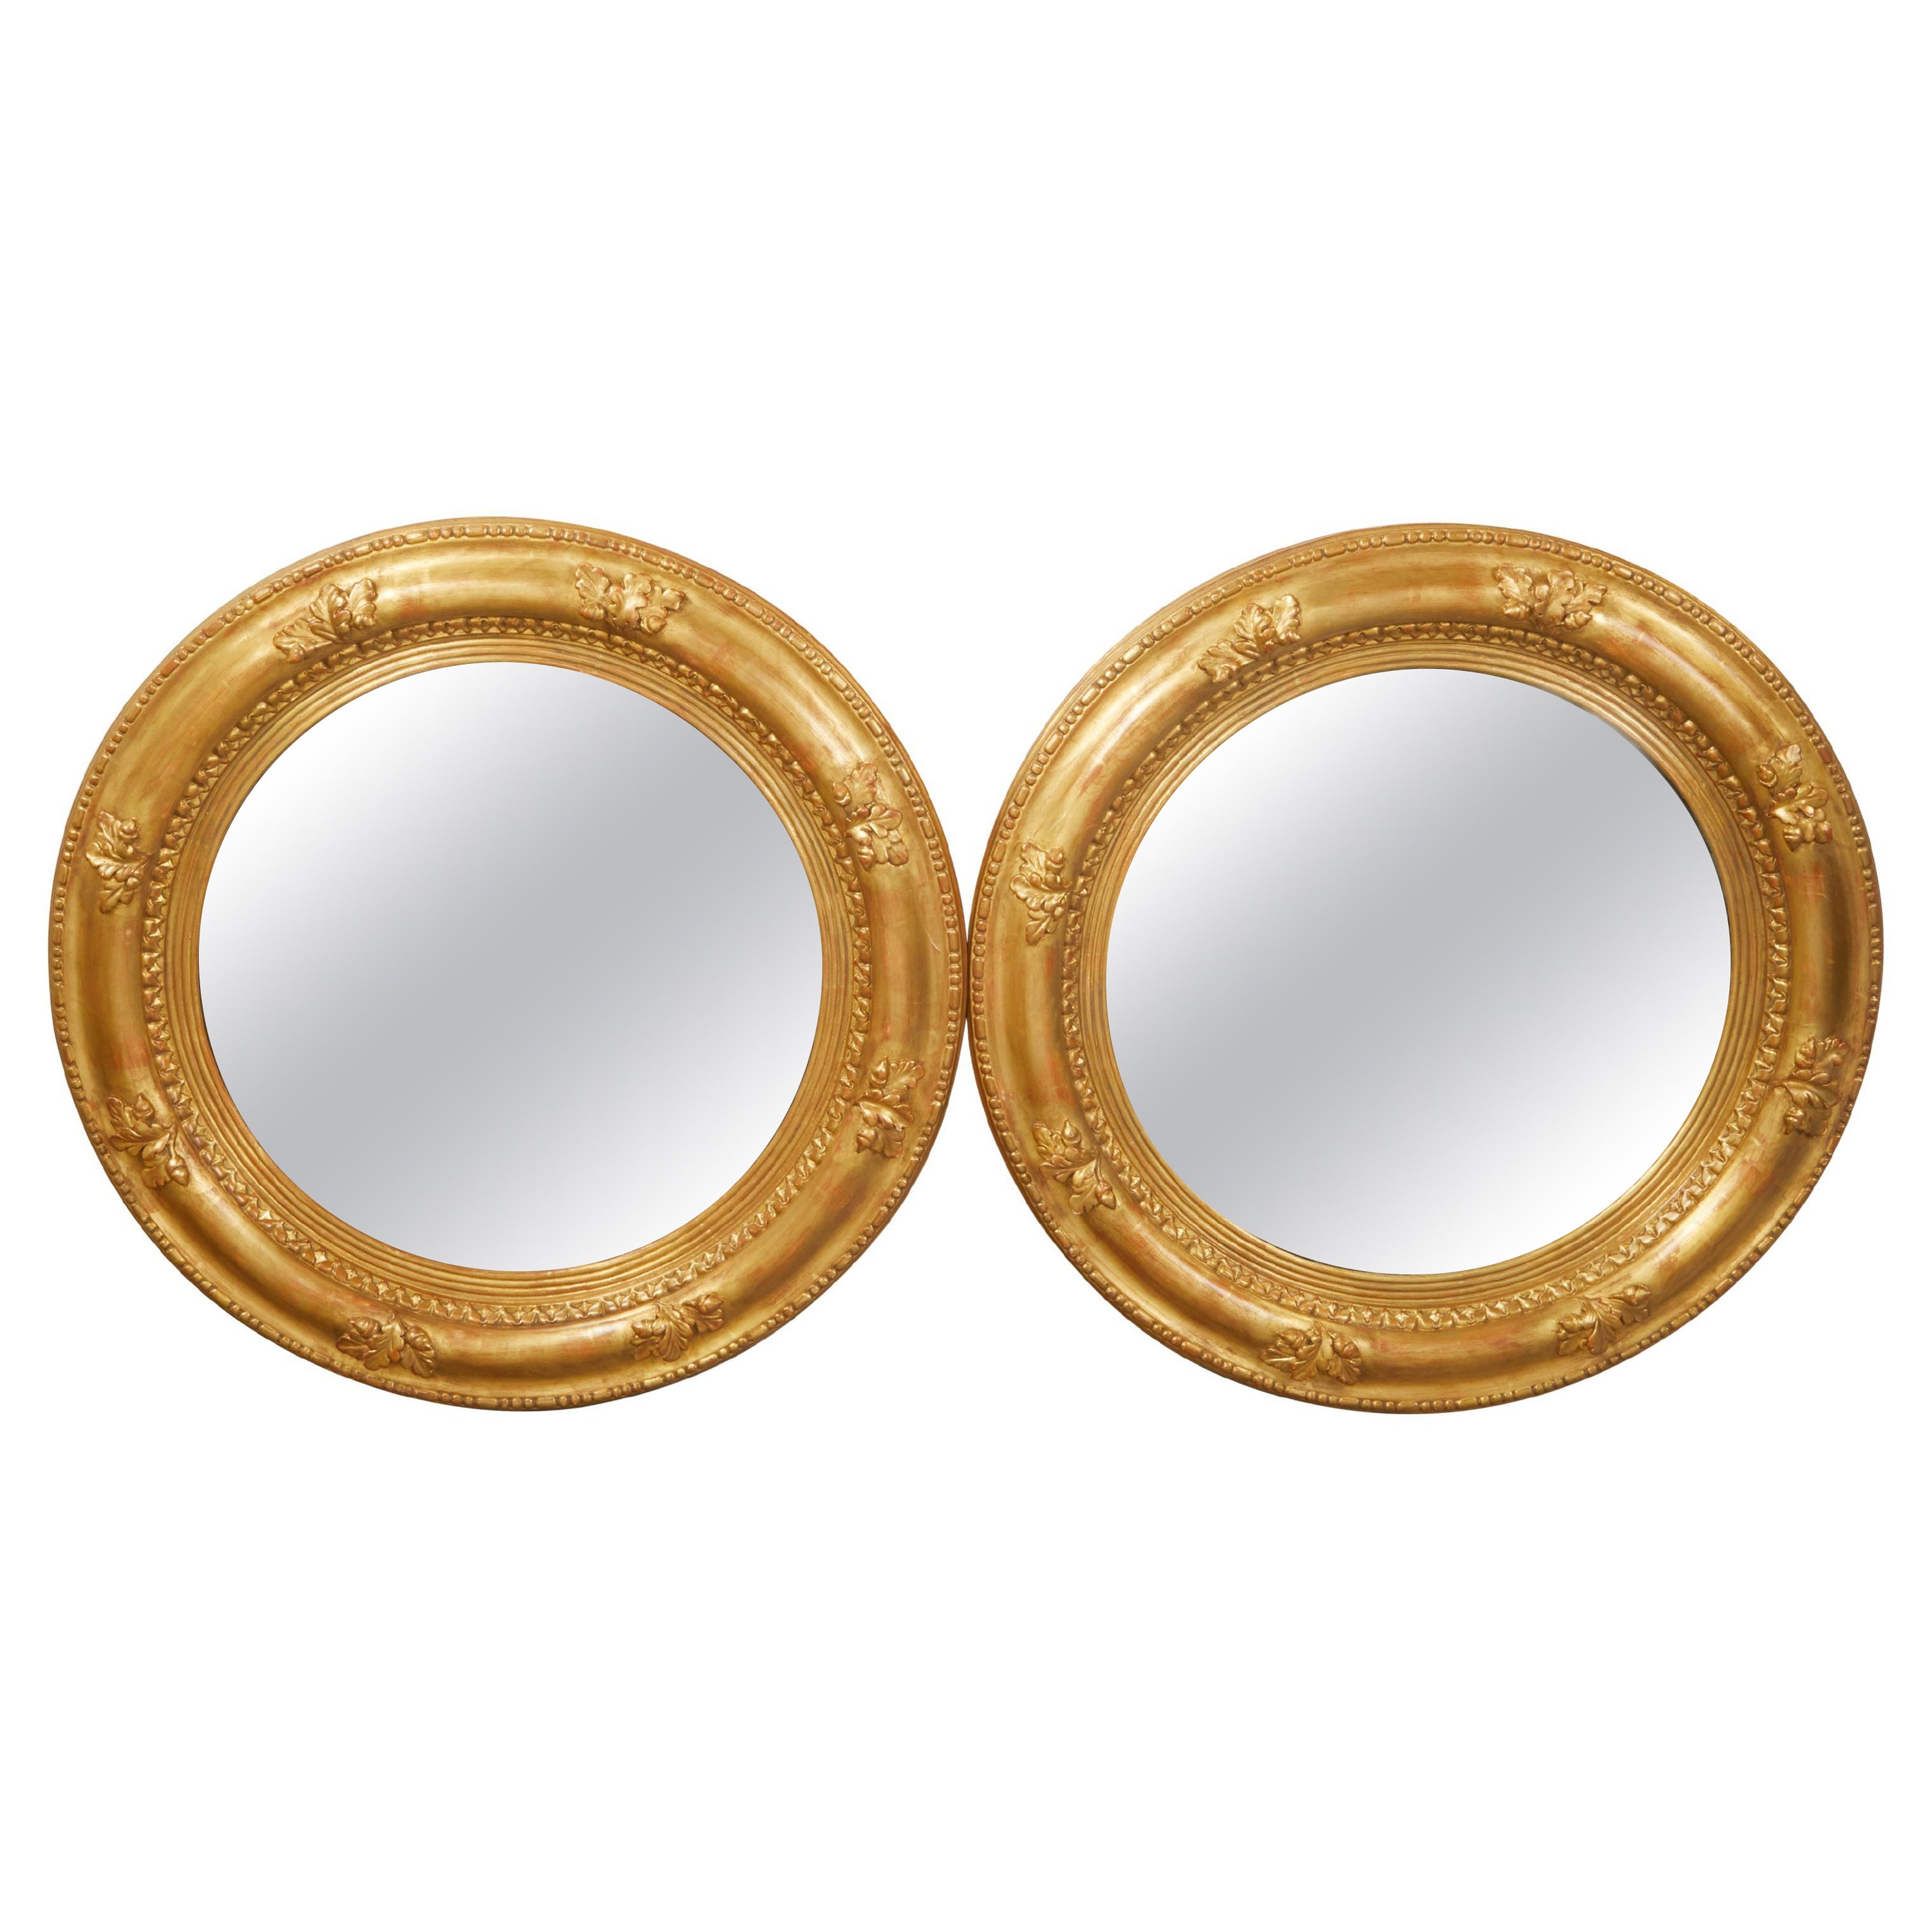 Paar runde, konvexe englische Spiegel aus vergoldetem Holz mit geschnitzten Eichenblättern aus den 1940er Jahren